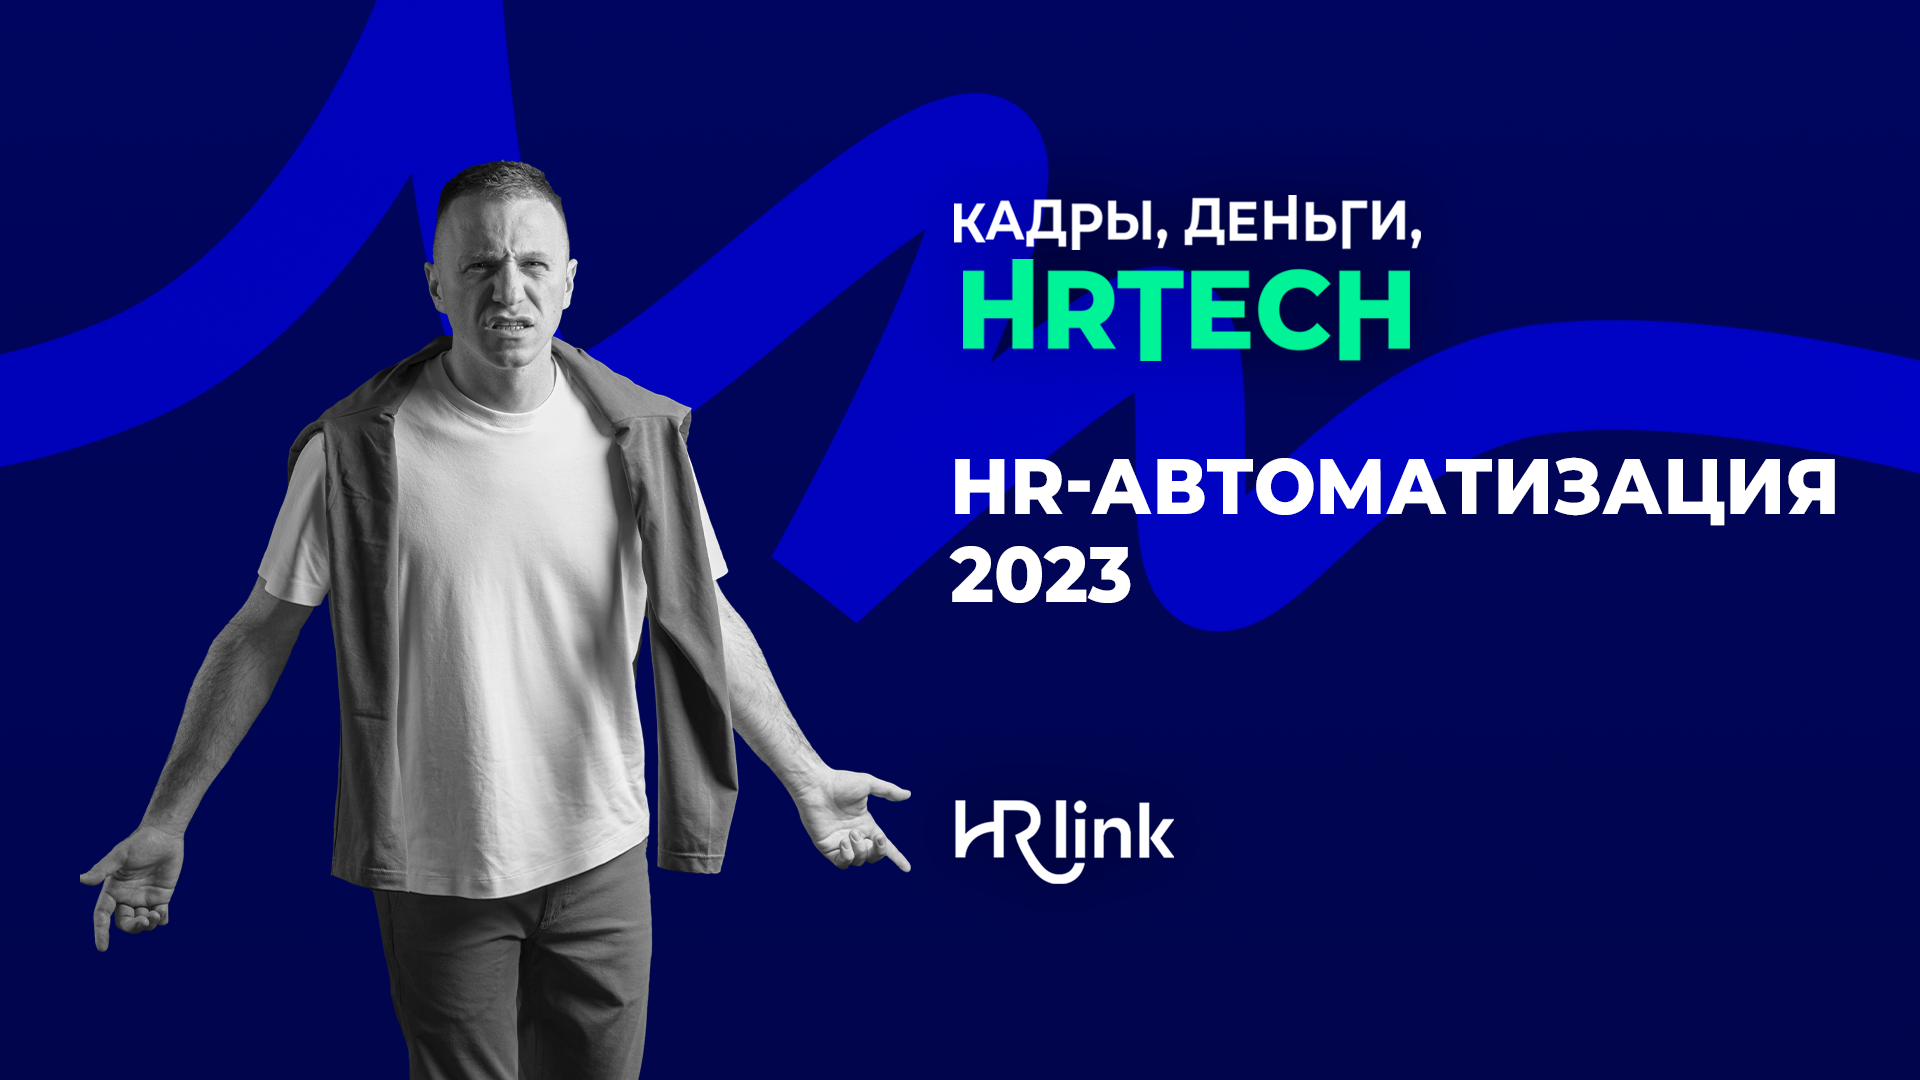 HR-автоматизация 2023